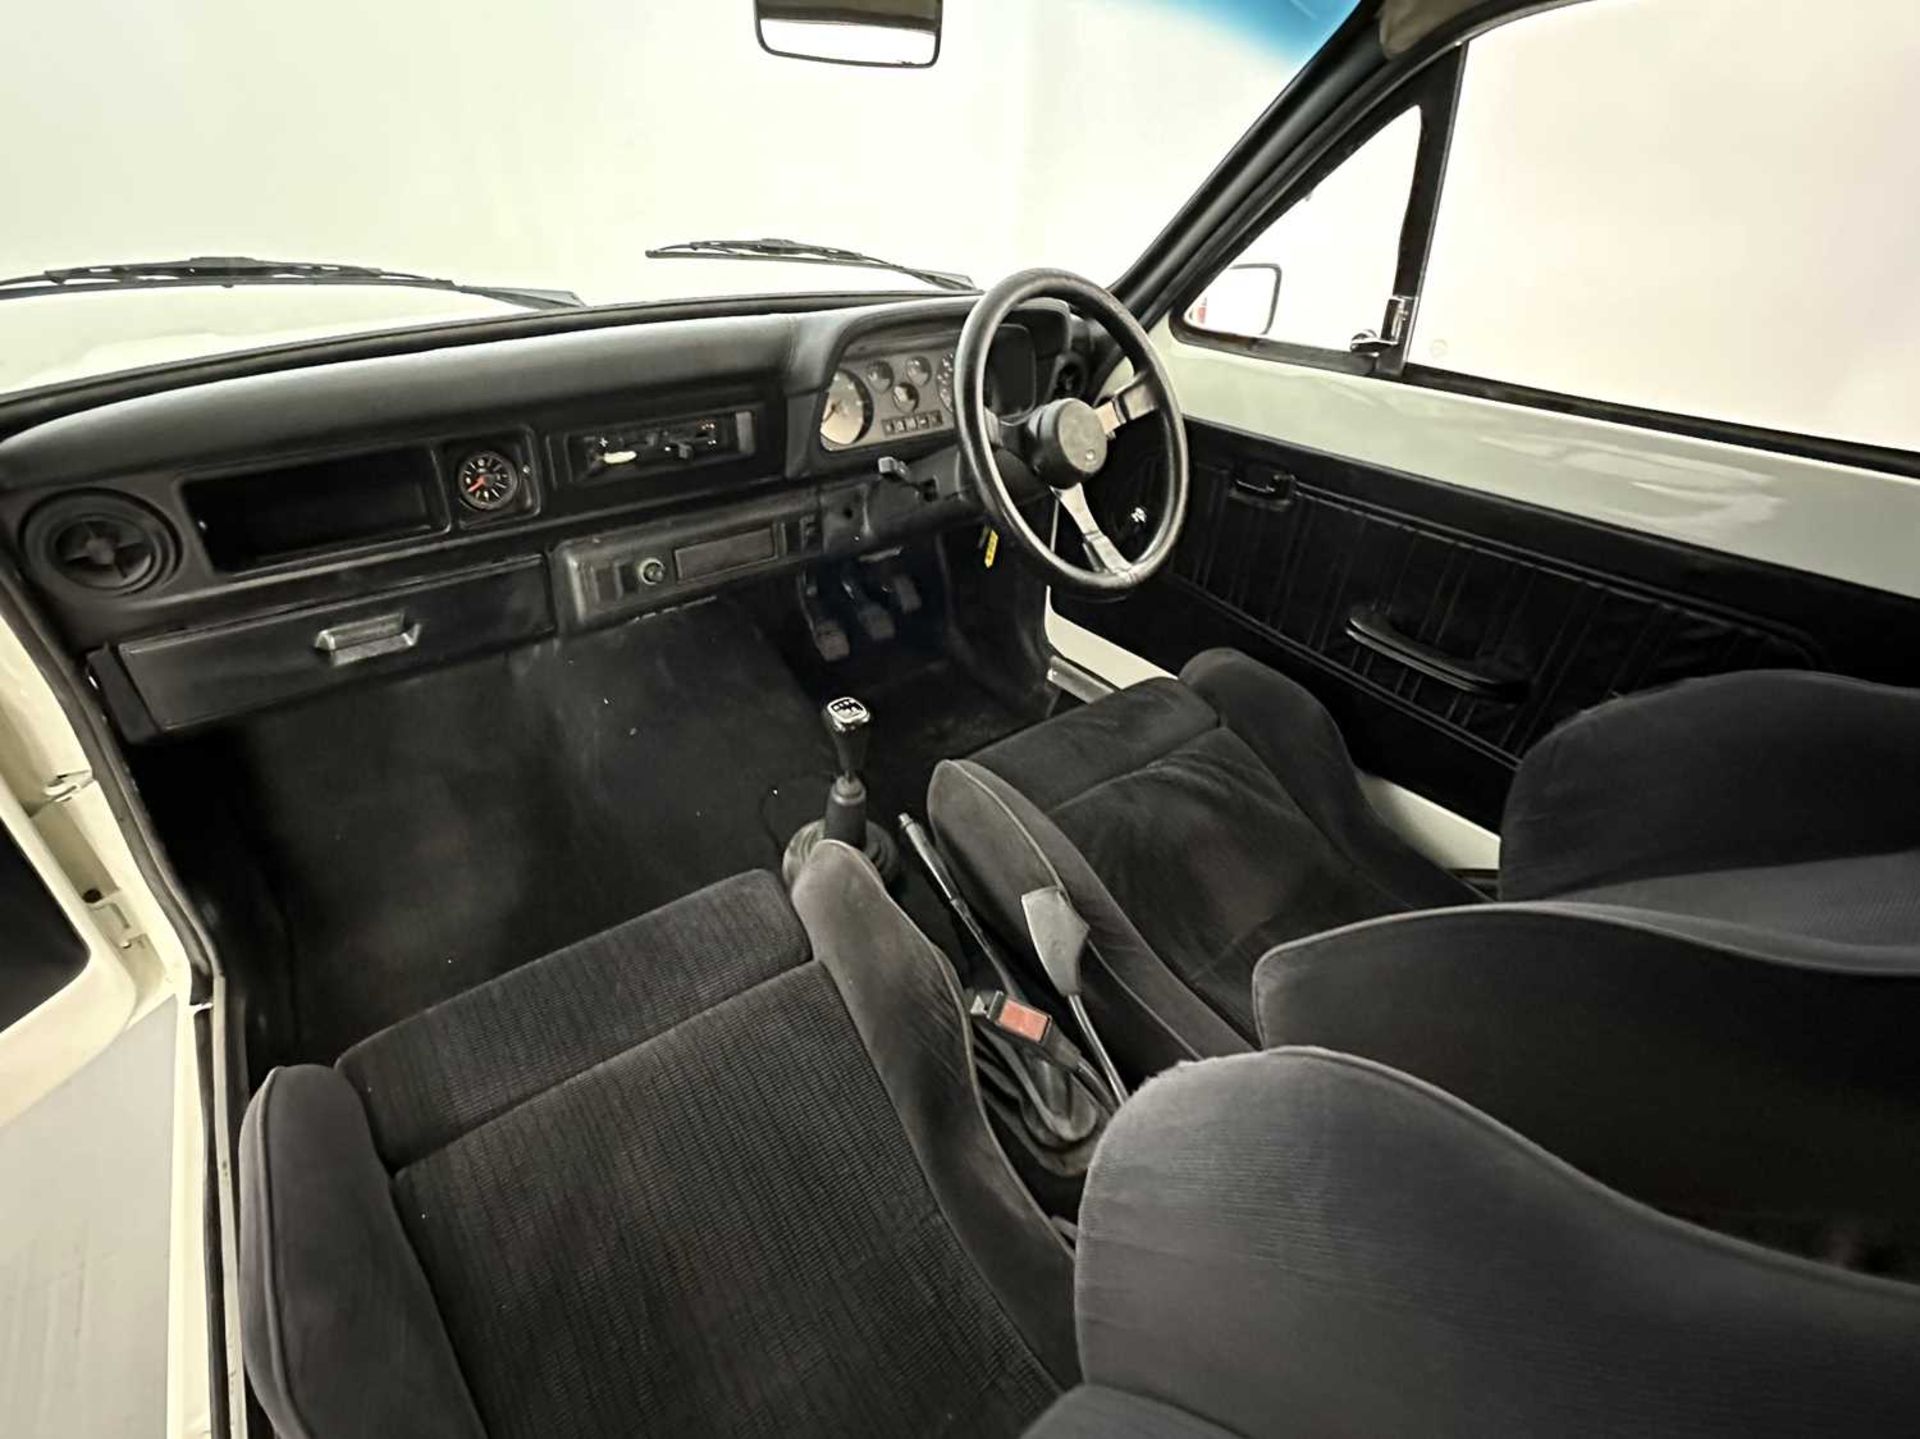 1977 Ford Escort MK2 Van Amazing RS2000 Spec! - Image 22 of 32